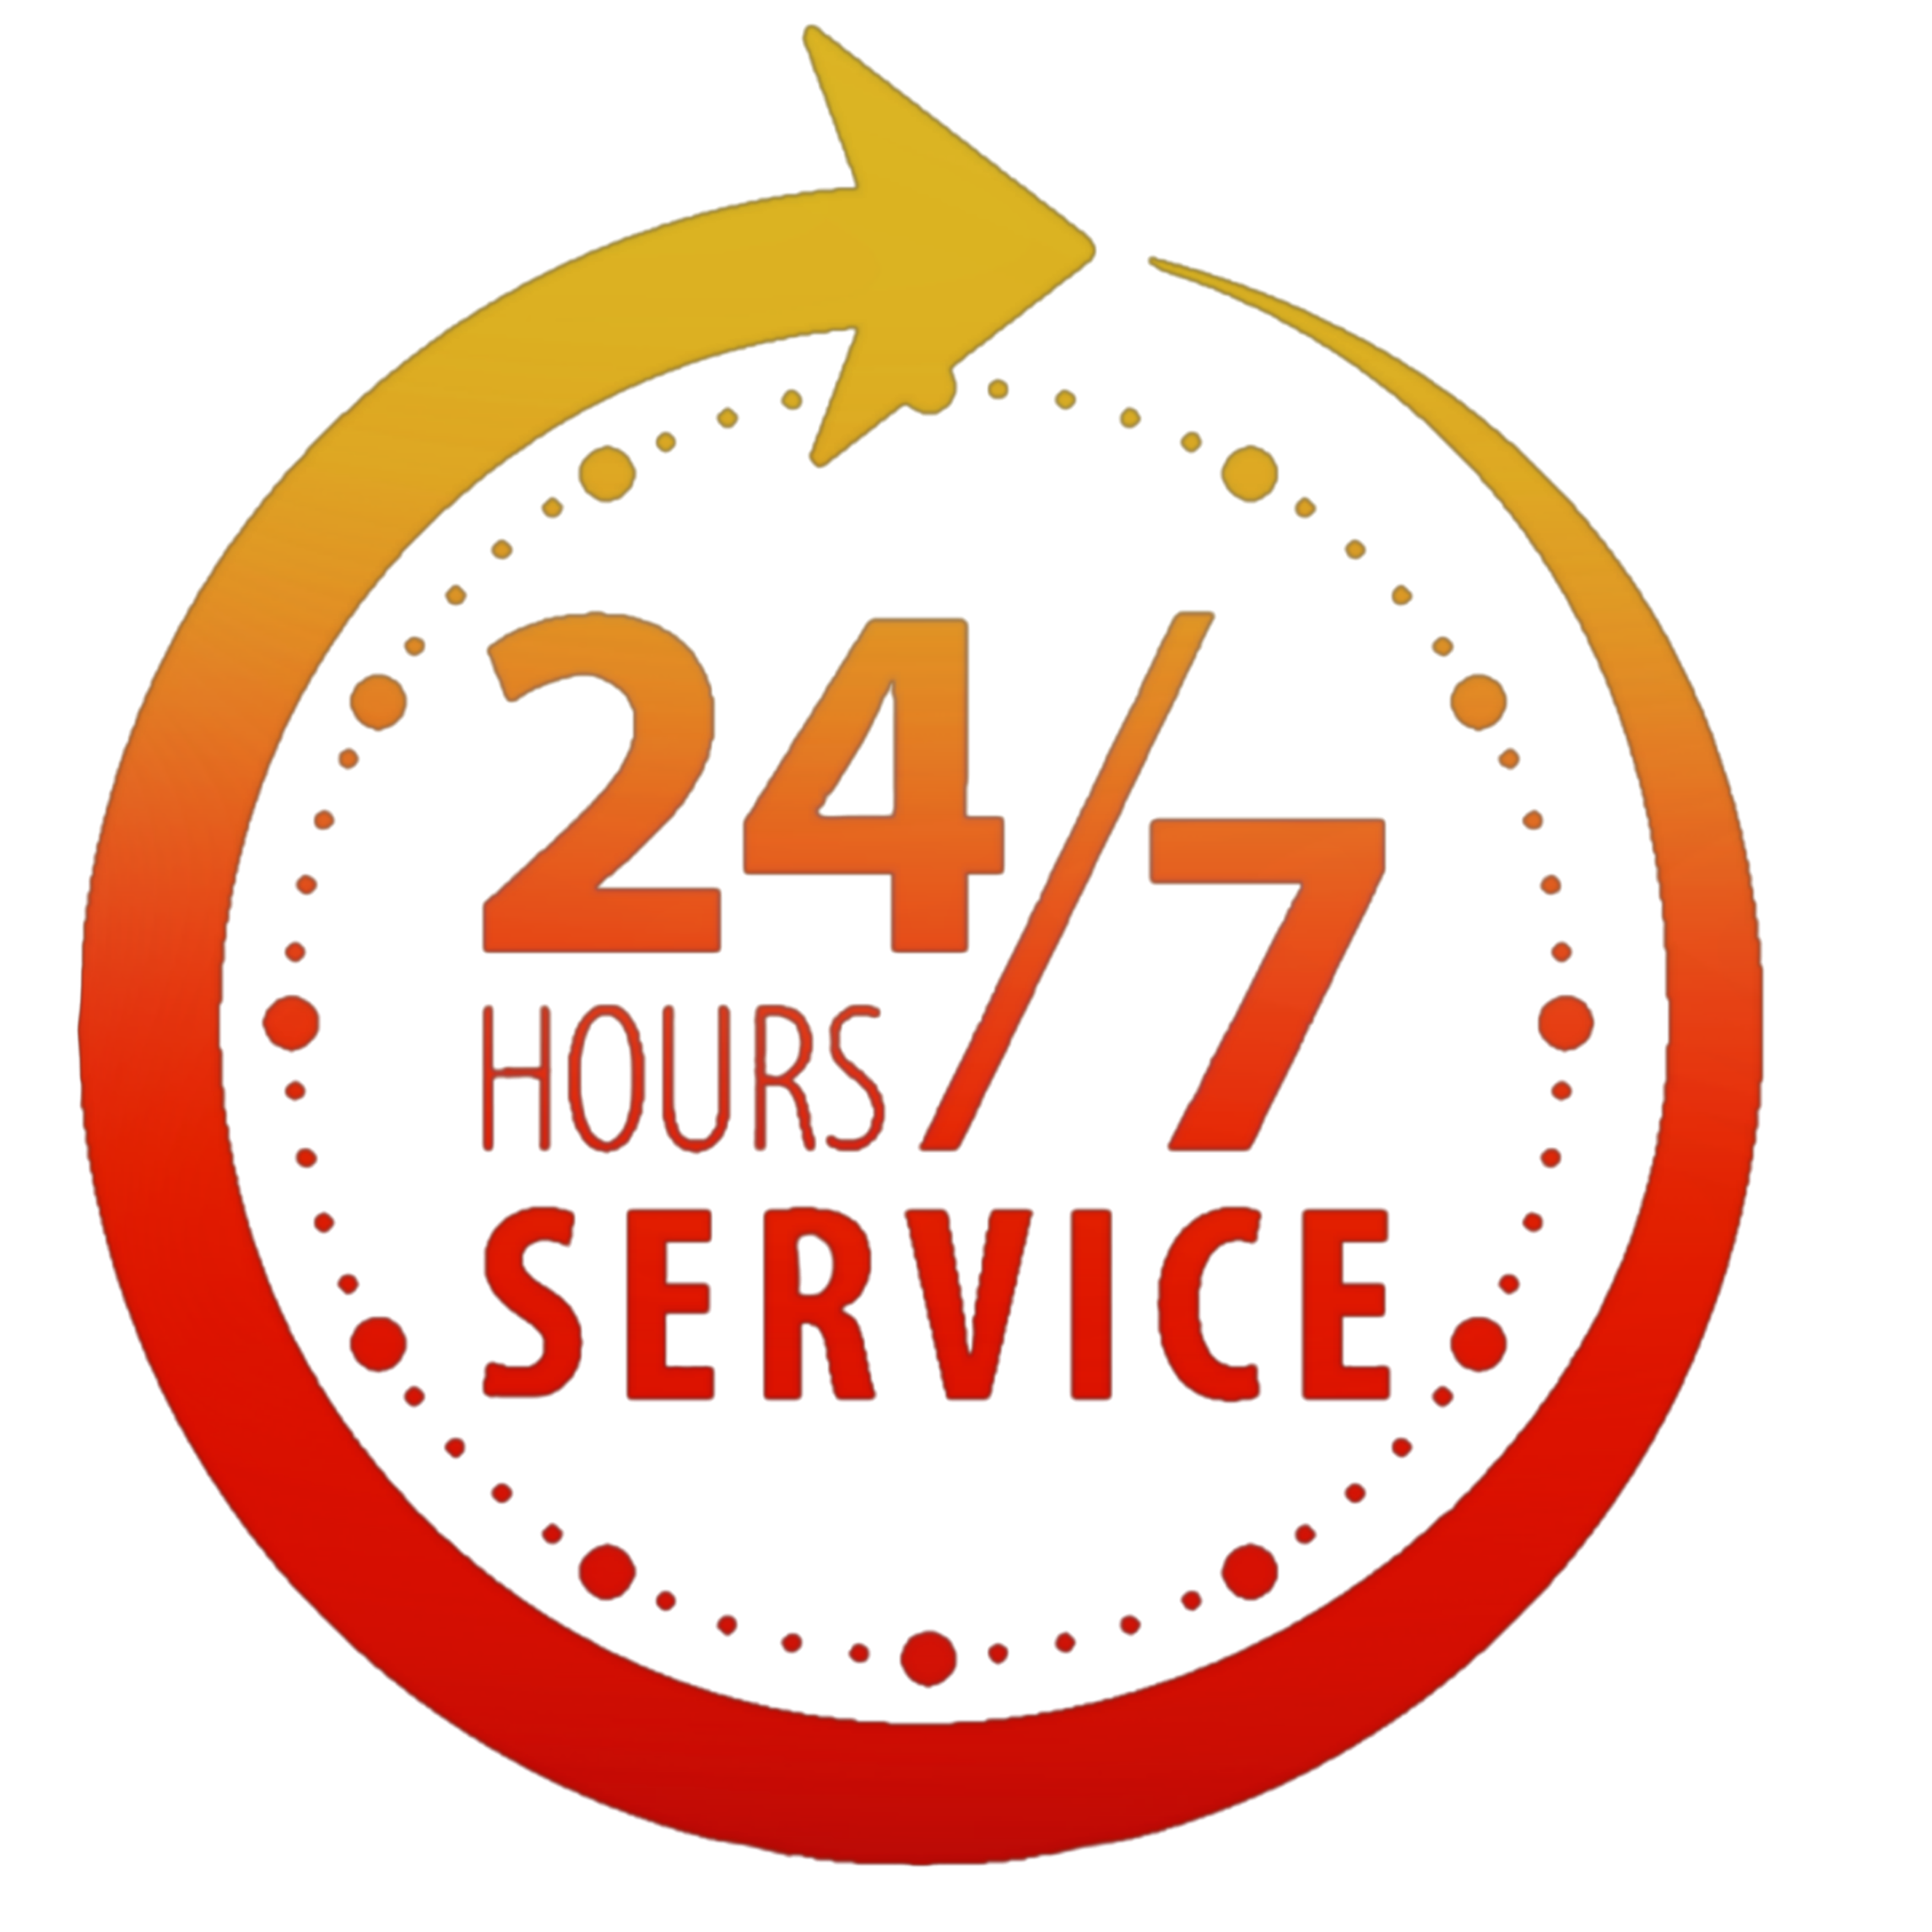 24/7 Логотип. Логотип 24 часа. Наклейка 24 часа. Работаем 24 часа. 1 24 shop